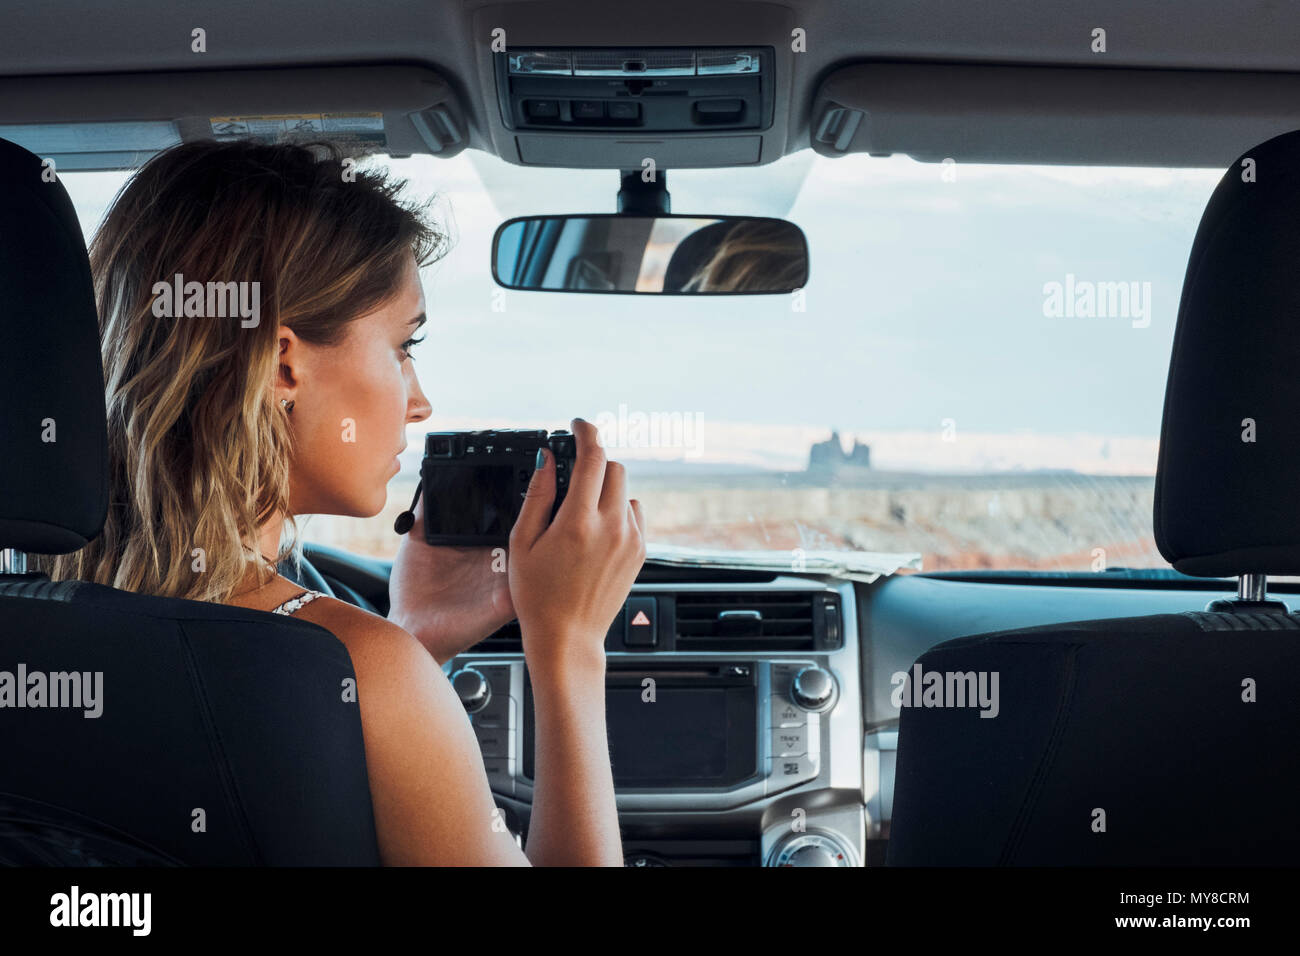 Jeune femme assise dans le véhicule, en prenant en photo pare-brise à l'aide de caméra, Mexican Hat, Utah, USA Banque D'Images